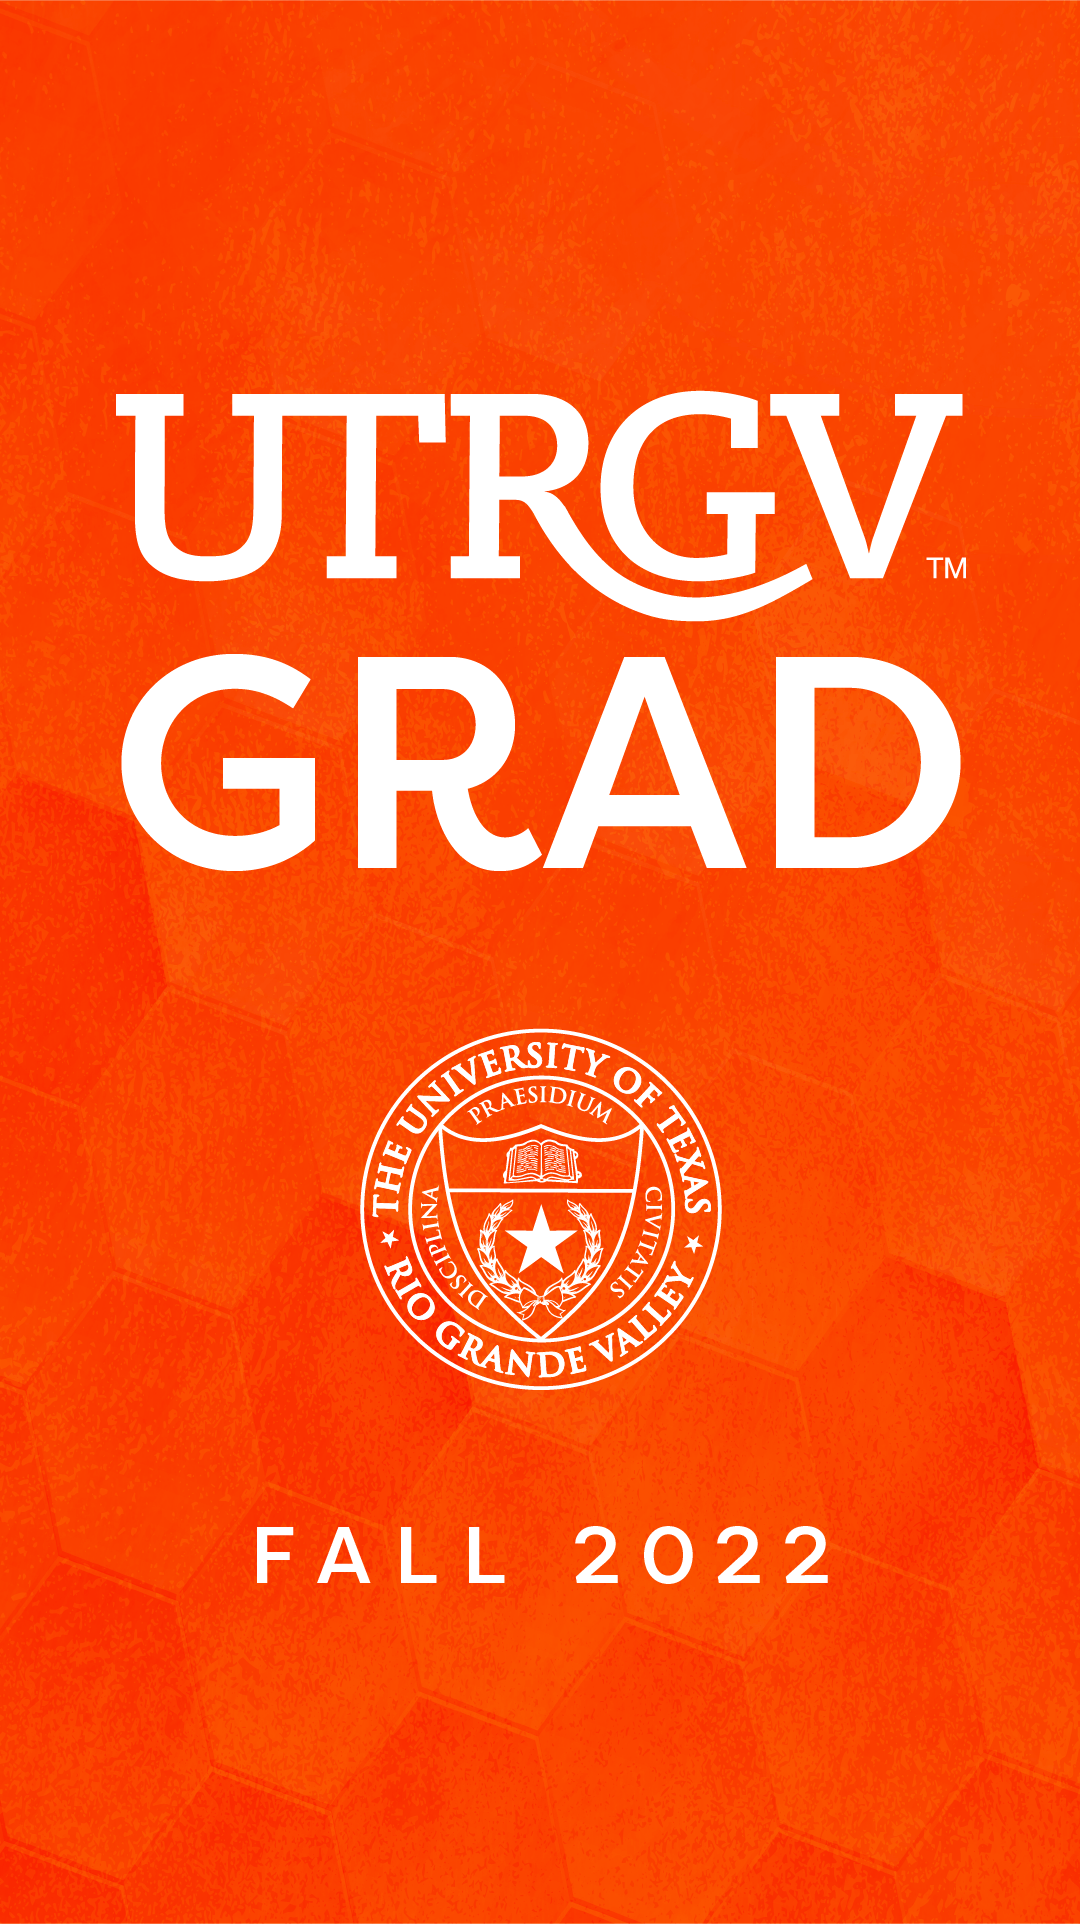 UTRGV Congrats UTRGV Grad!